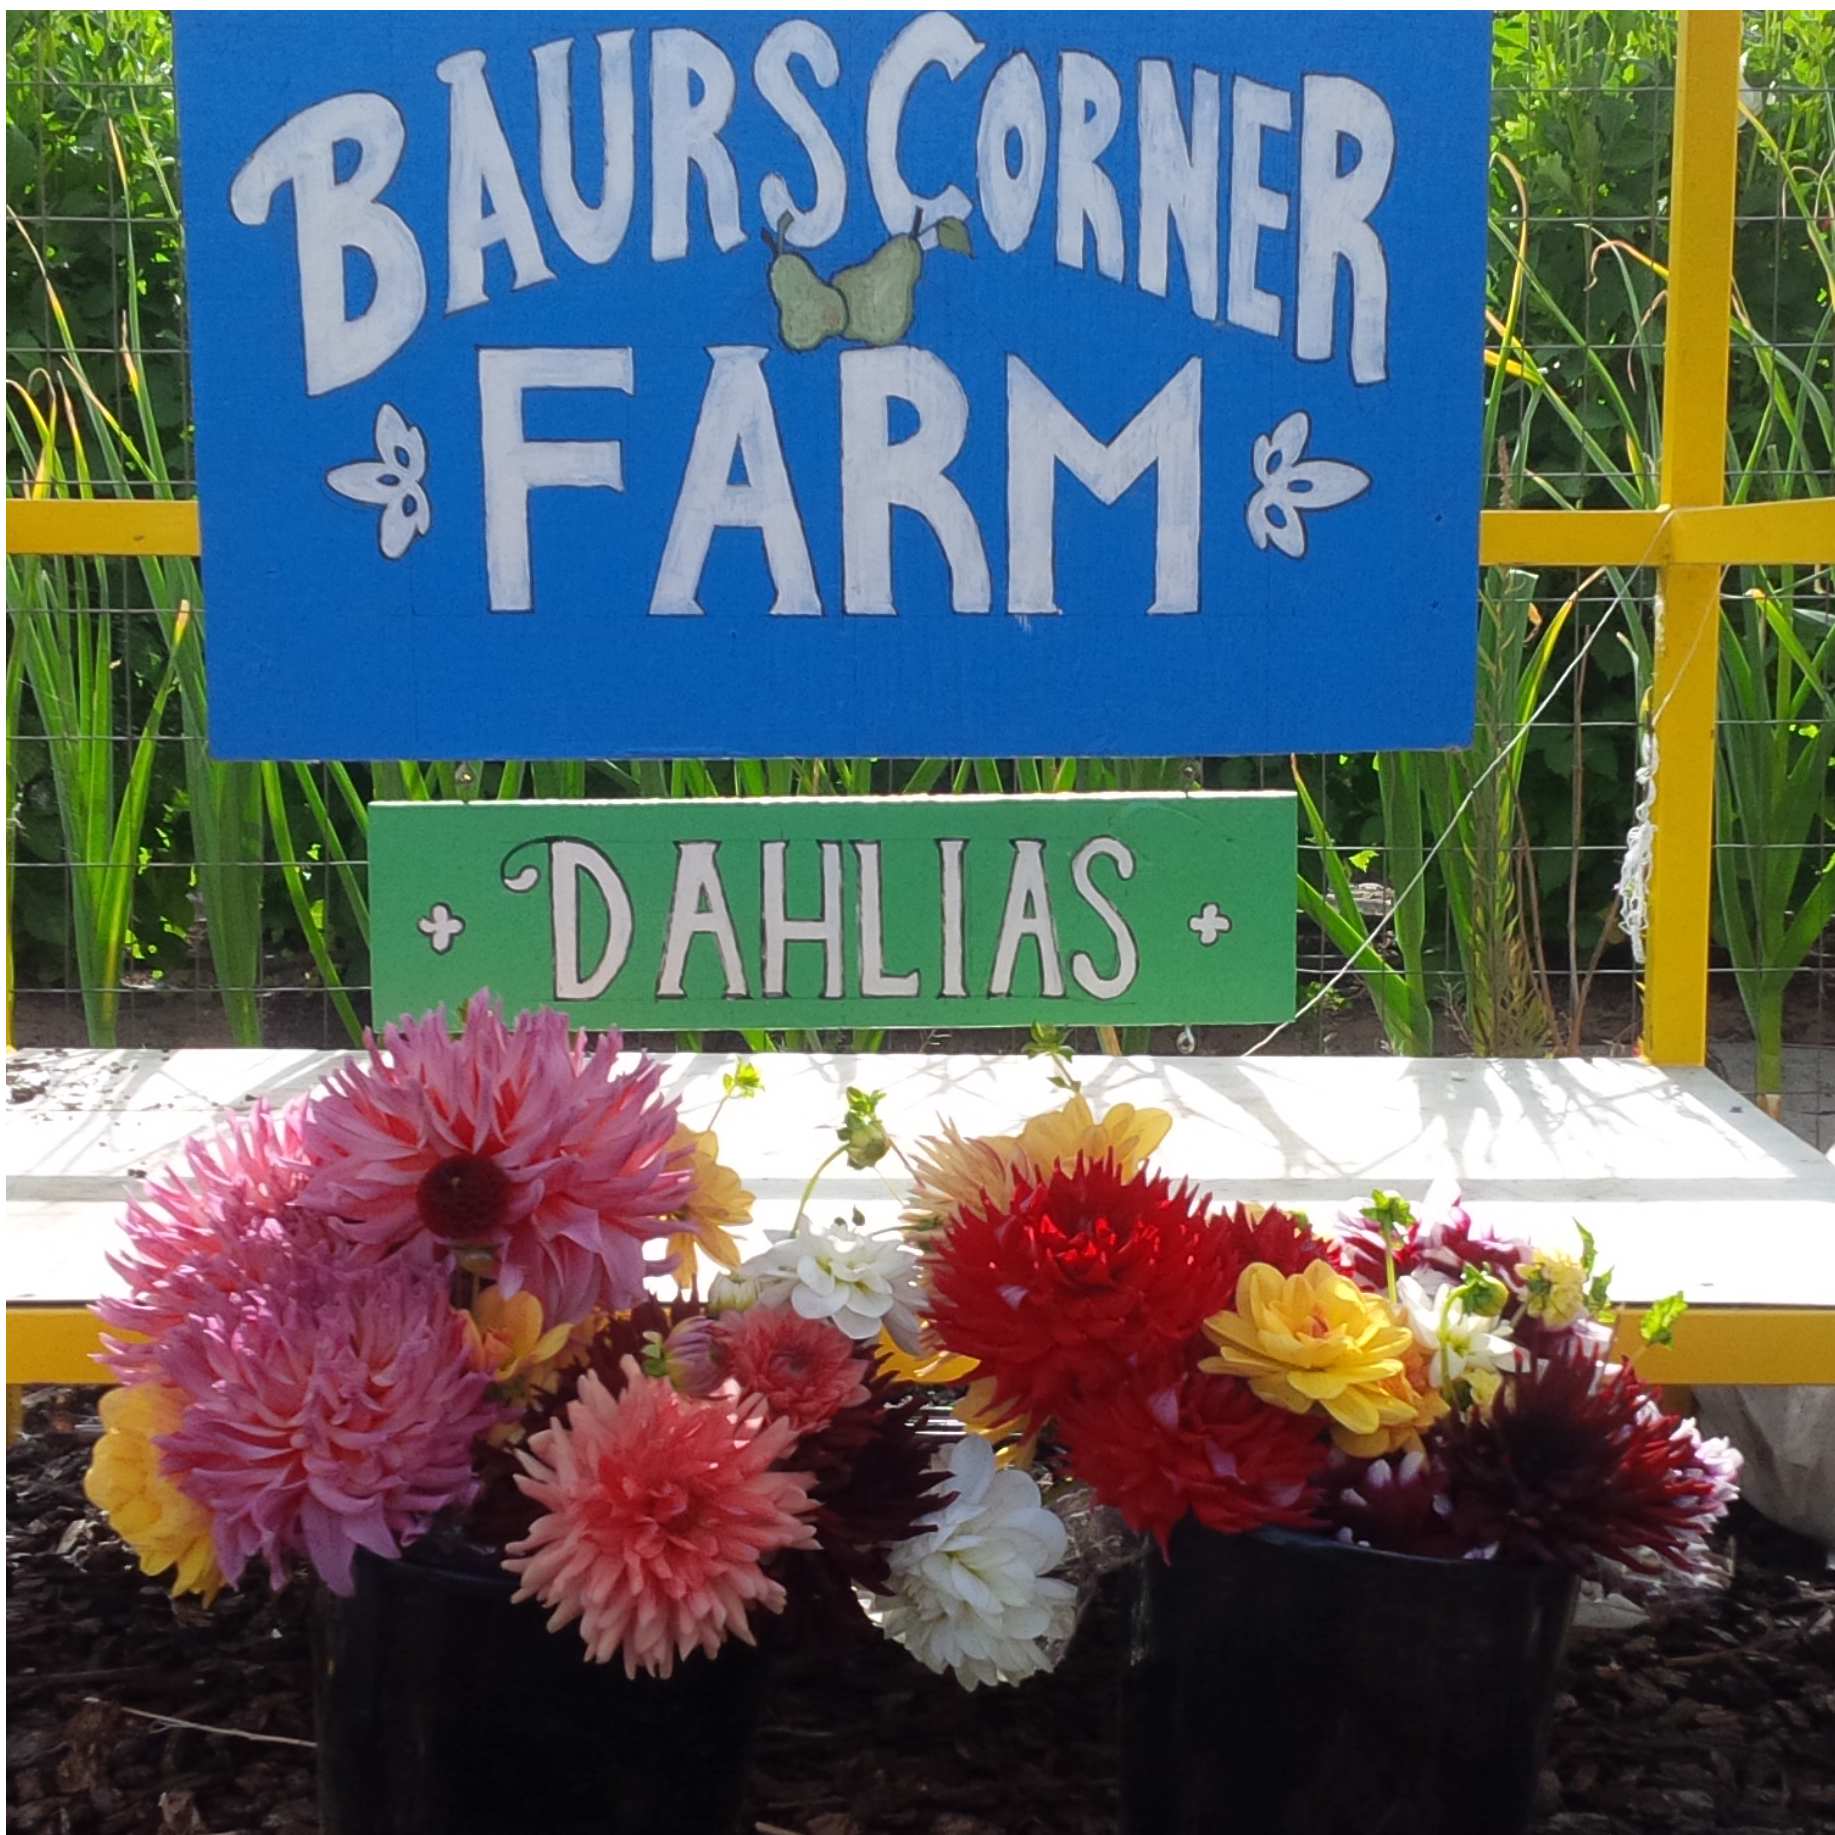 Baurs Corner Farm